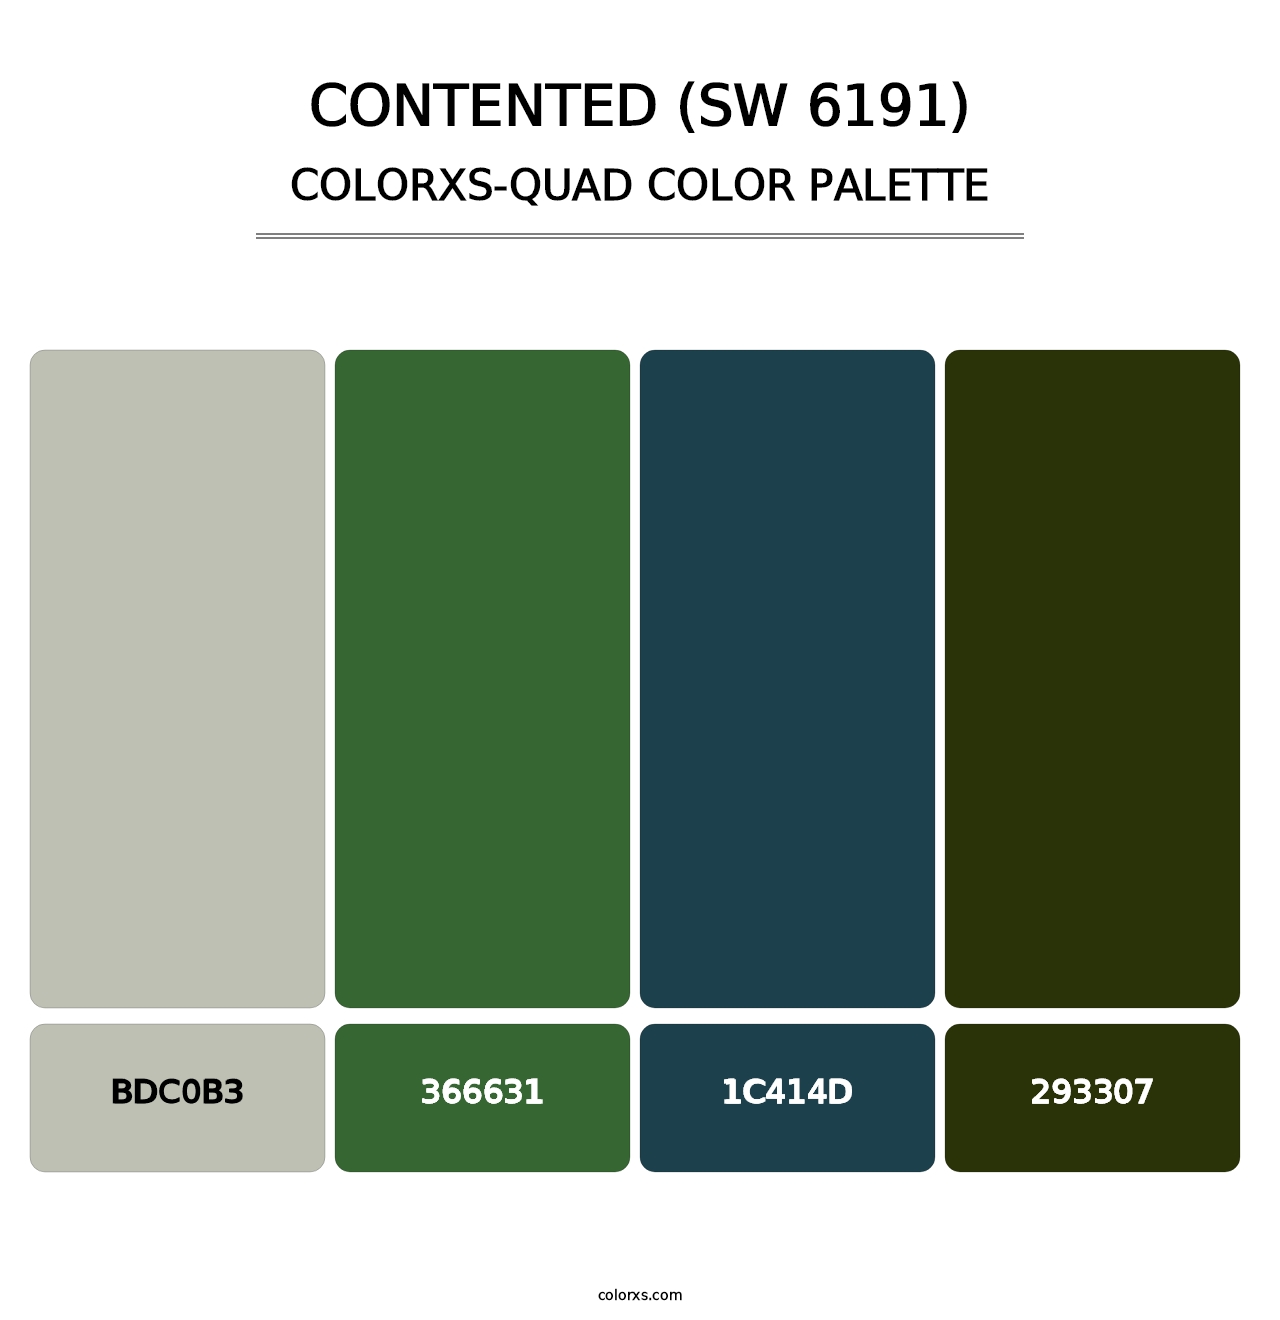 Contented (SW 6191) - Colorxs Quad Palette